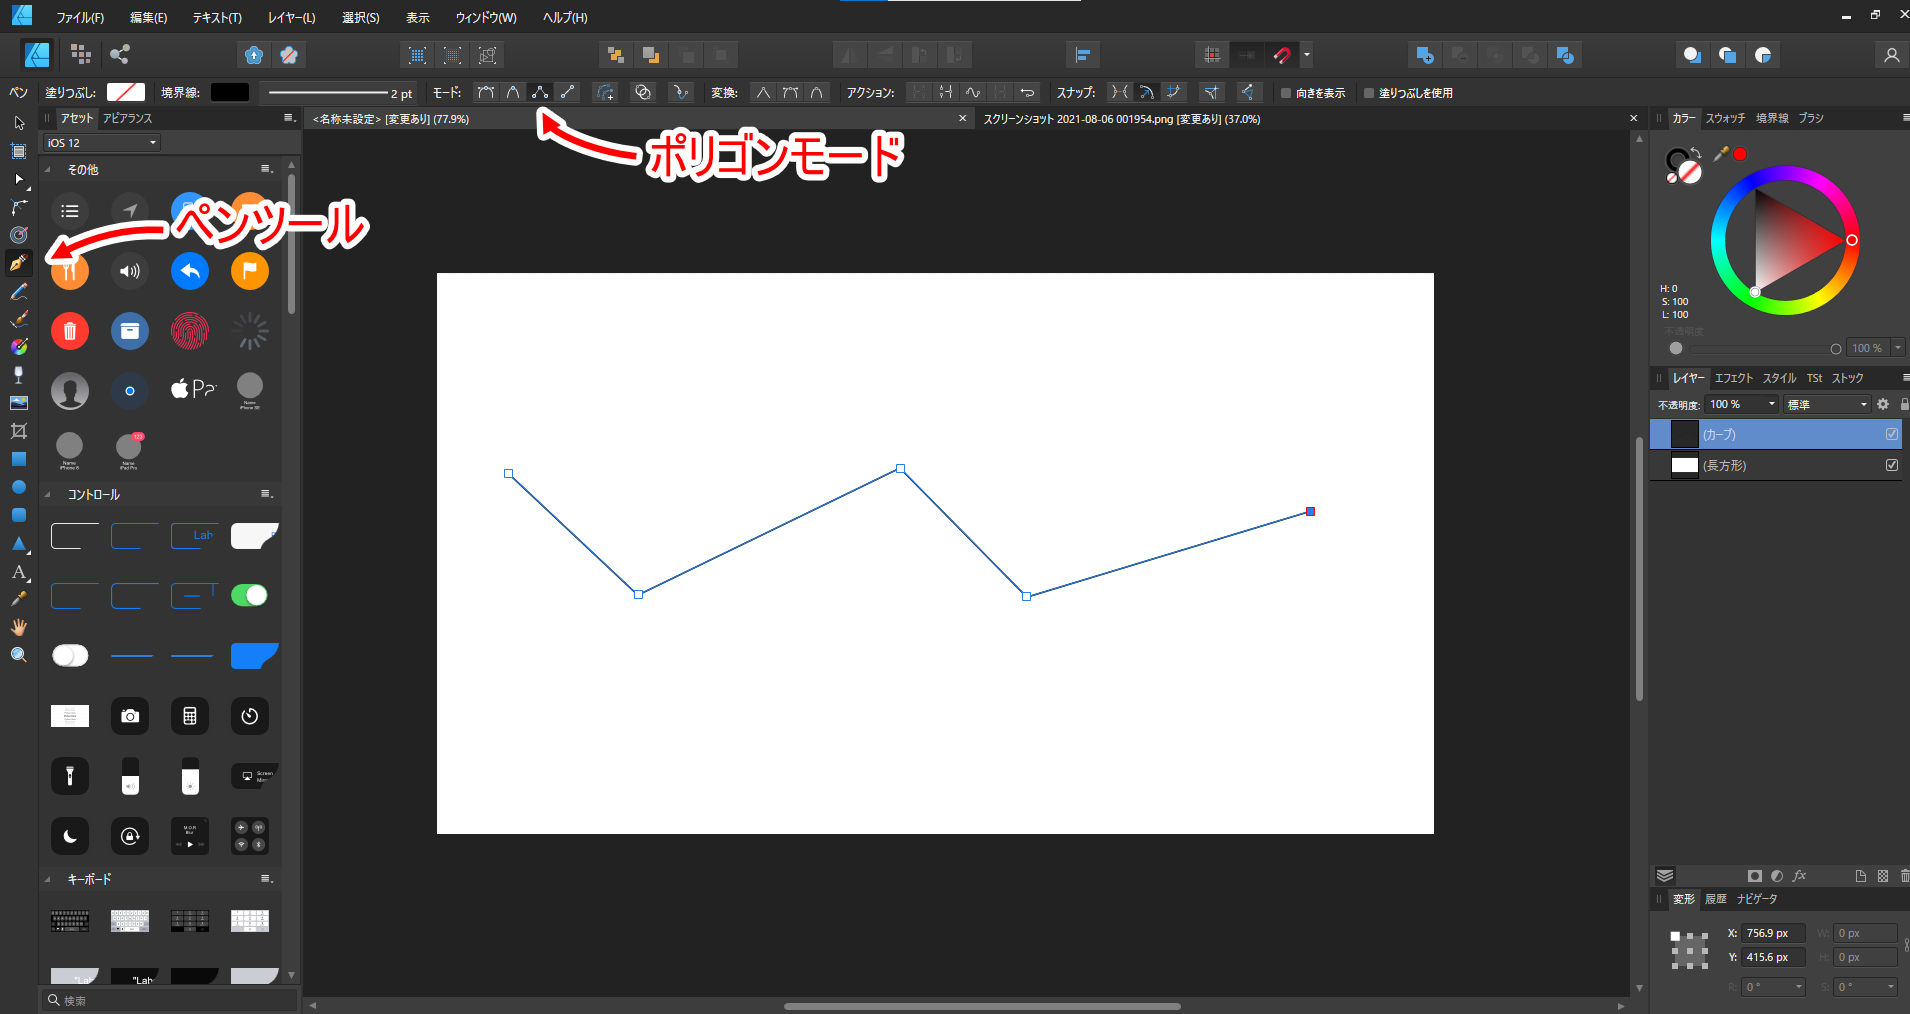 Affinity Designer ペンツールの使い方 ベジェ曲線ｖｖｖｖｖｖｖｖｖｖｖｖｖｖｖｖｖ